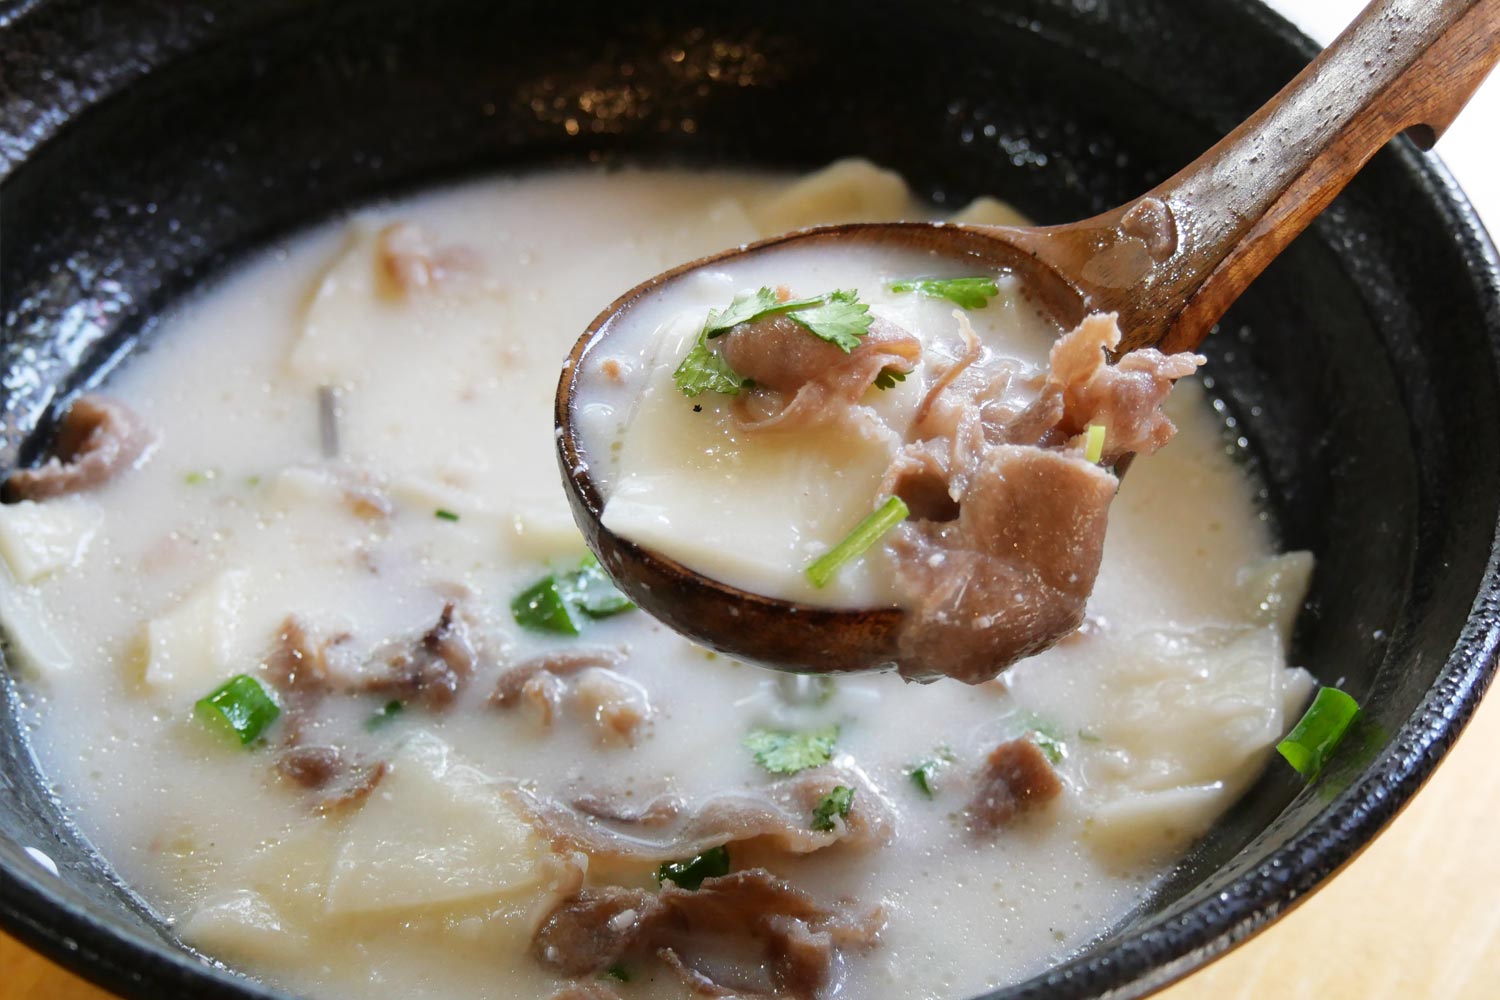 スープには極薄切りにした羊肉入り。1杯で栄養価の高い、内モンゴルのひるごはんの佇まい。